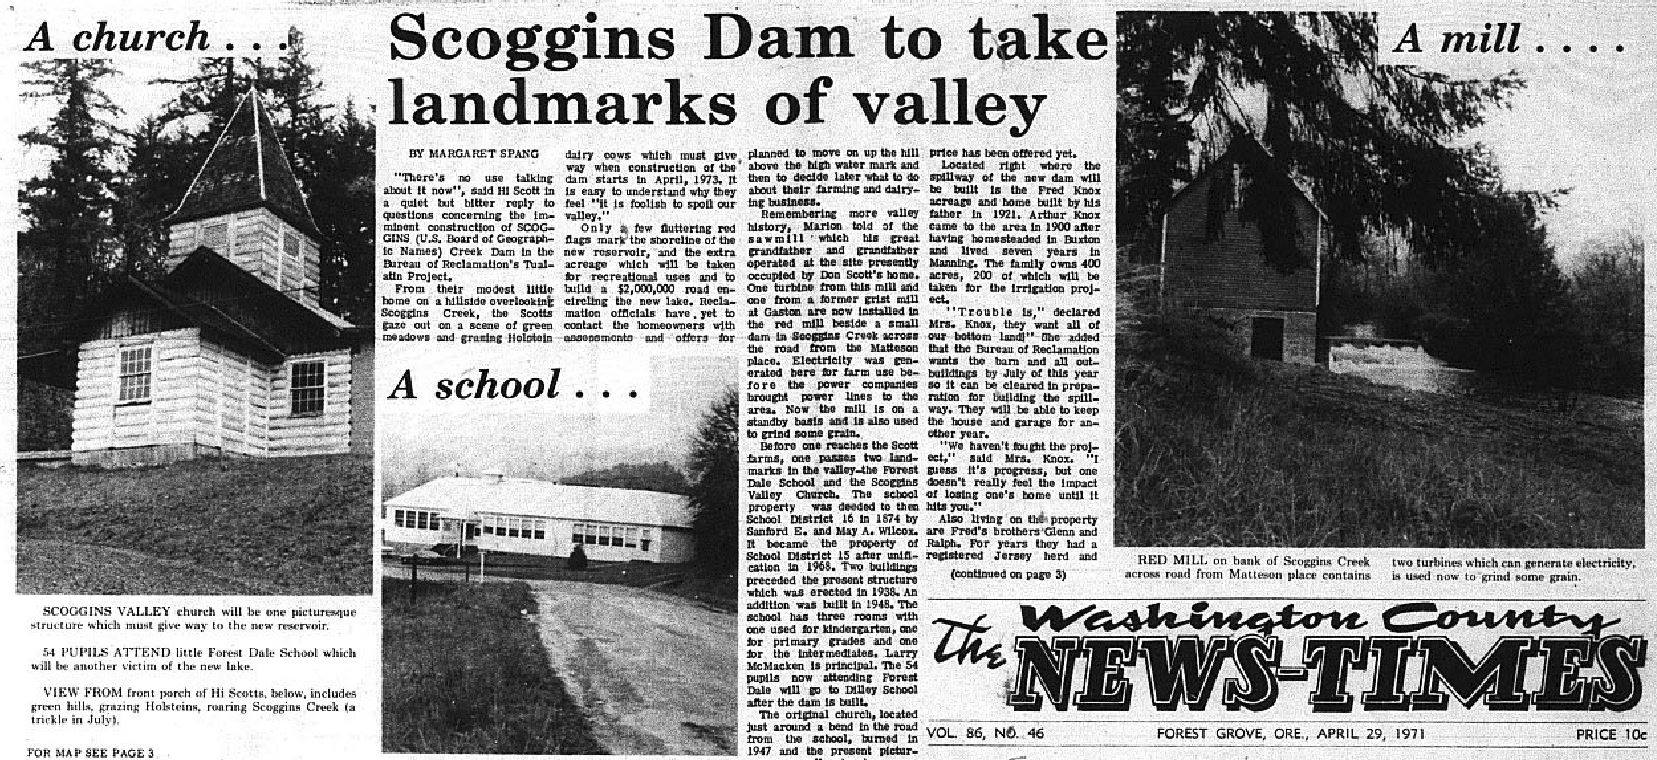 Washington County News Times april 1971